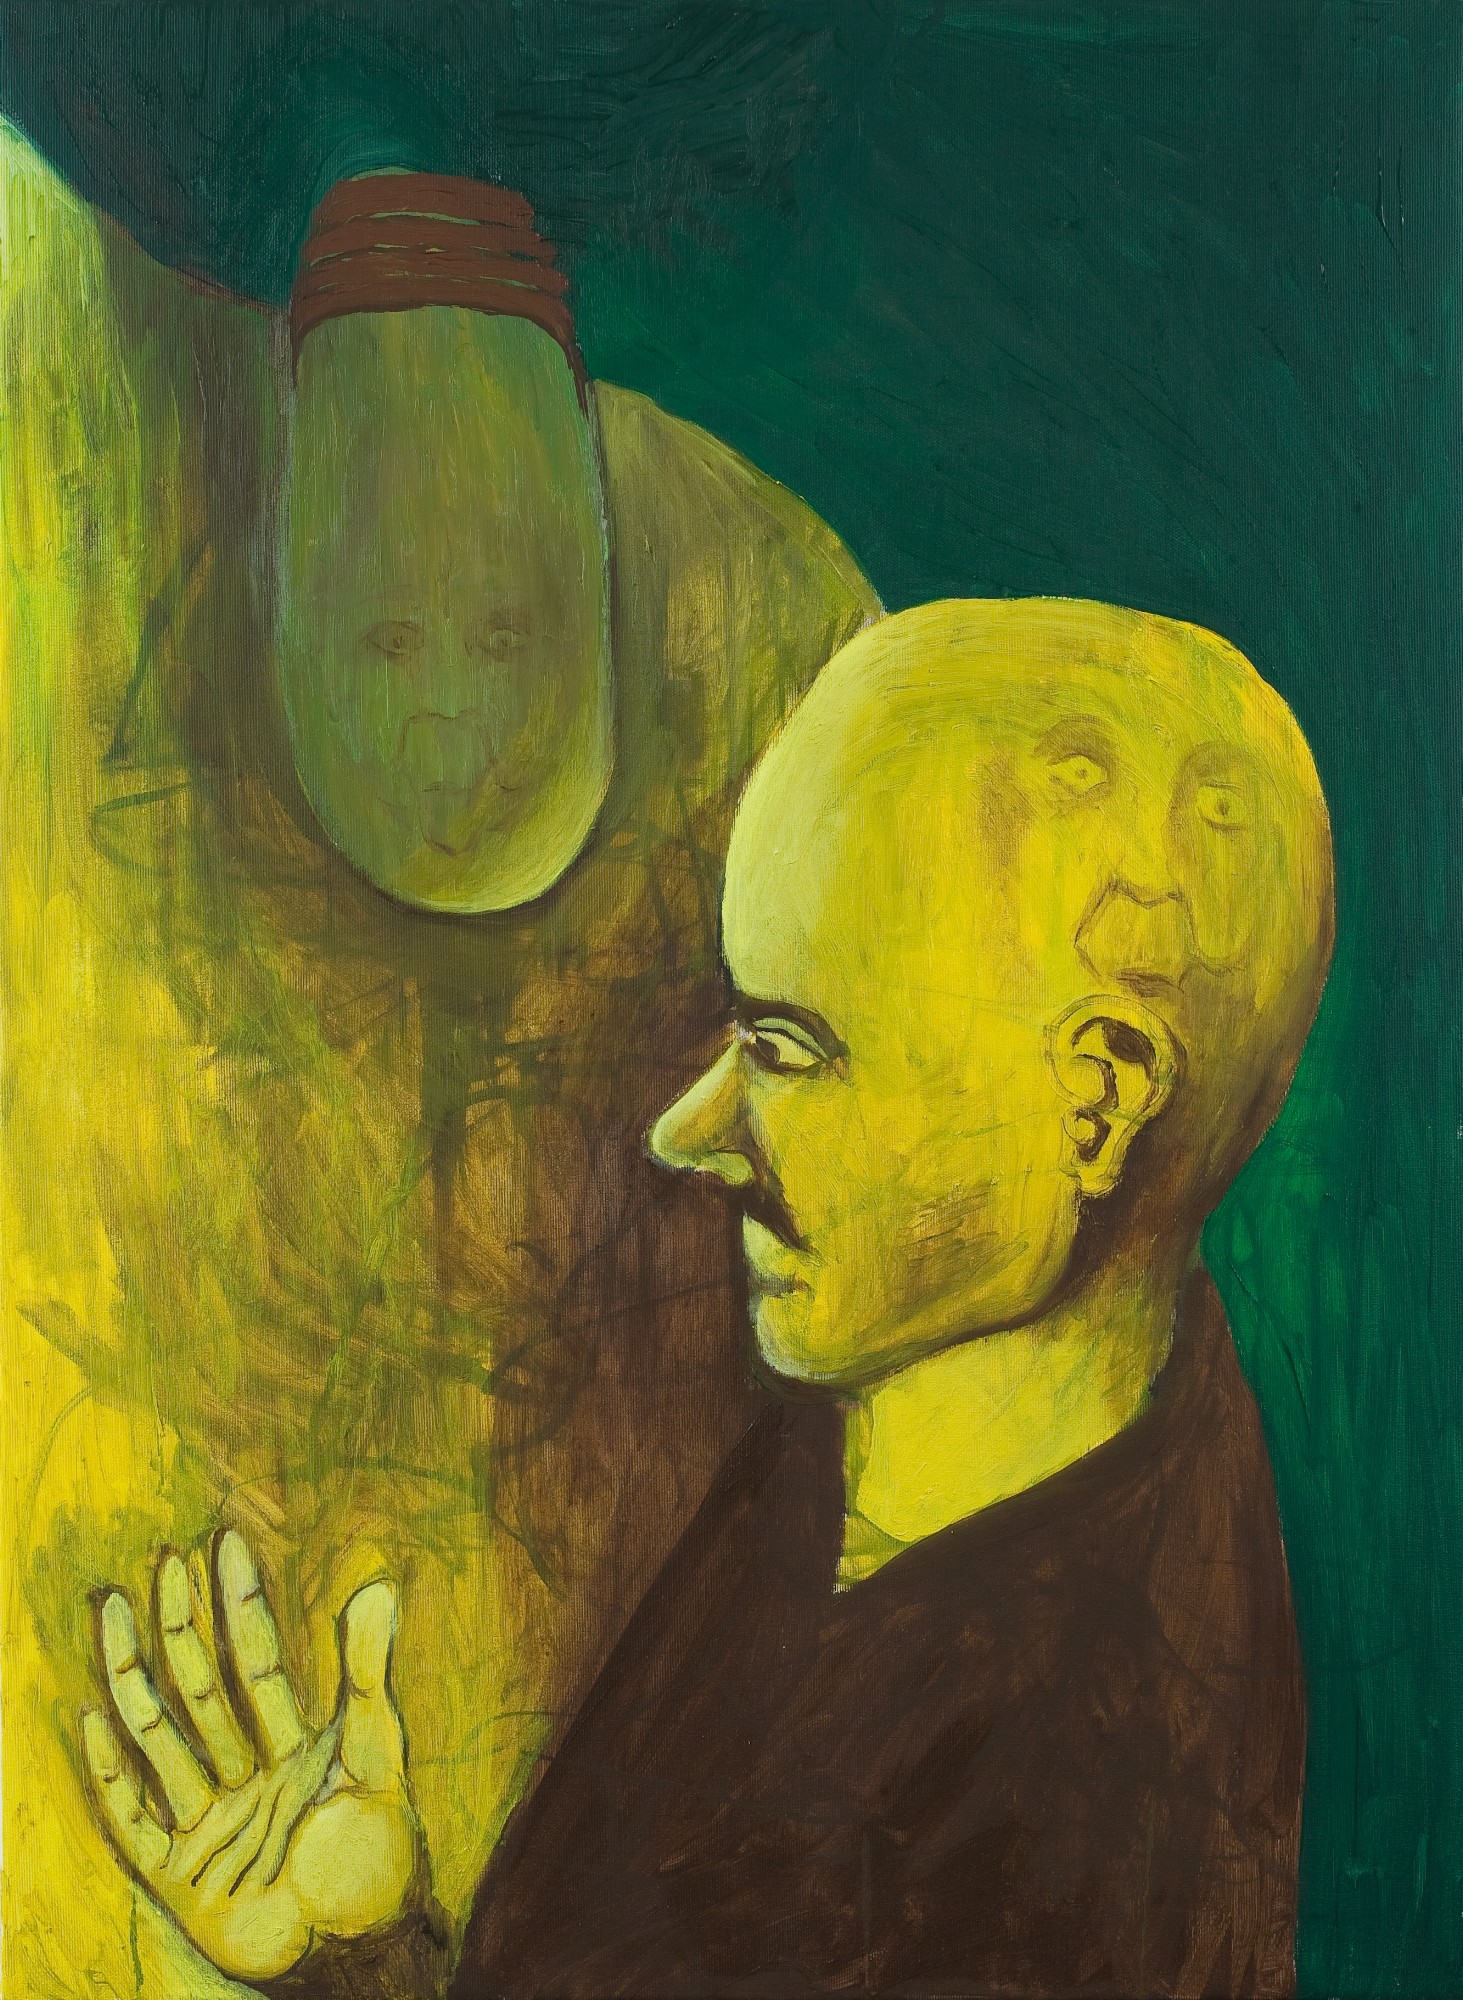 René Luckhardt, Das Gesicht in der Birne, 2008, oil on canvas, 89 x 65 cm